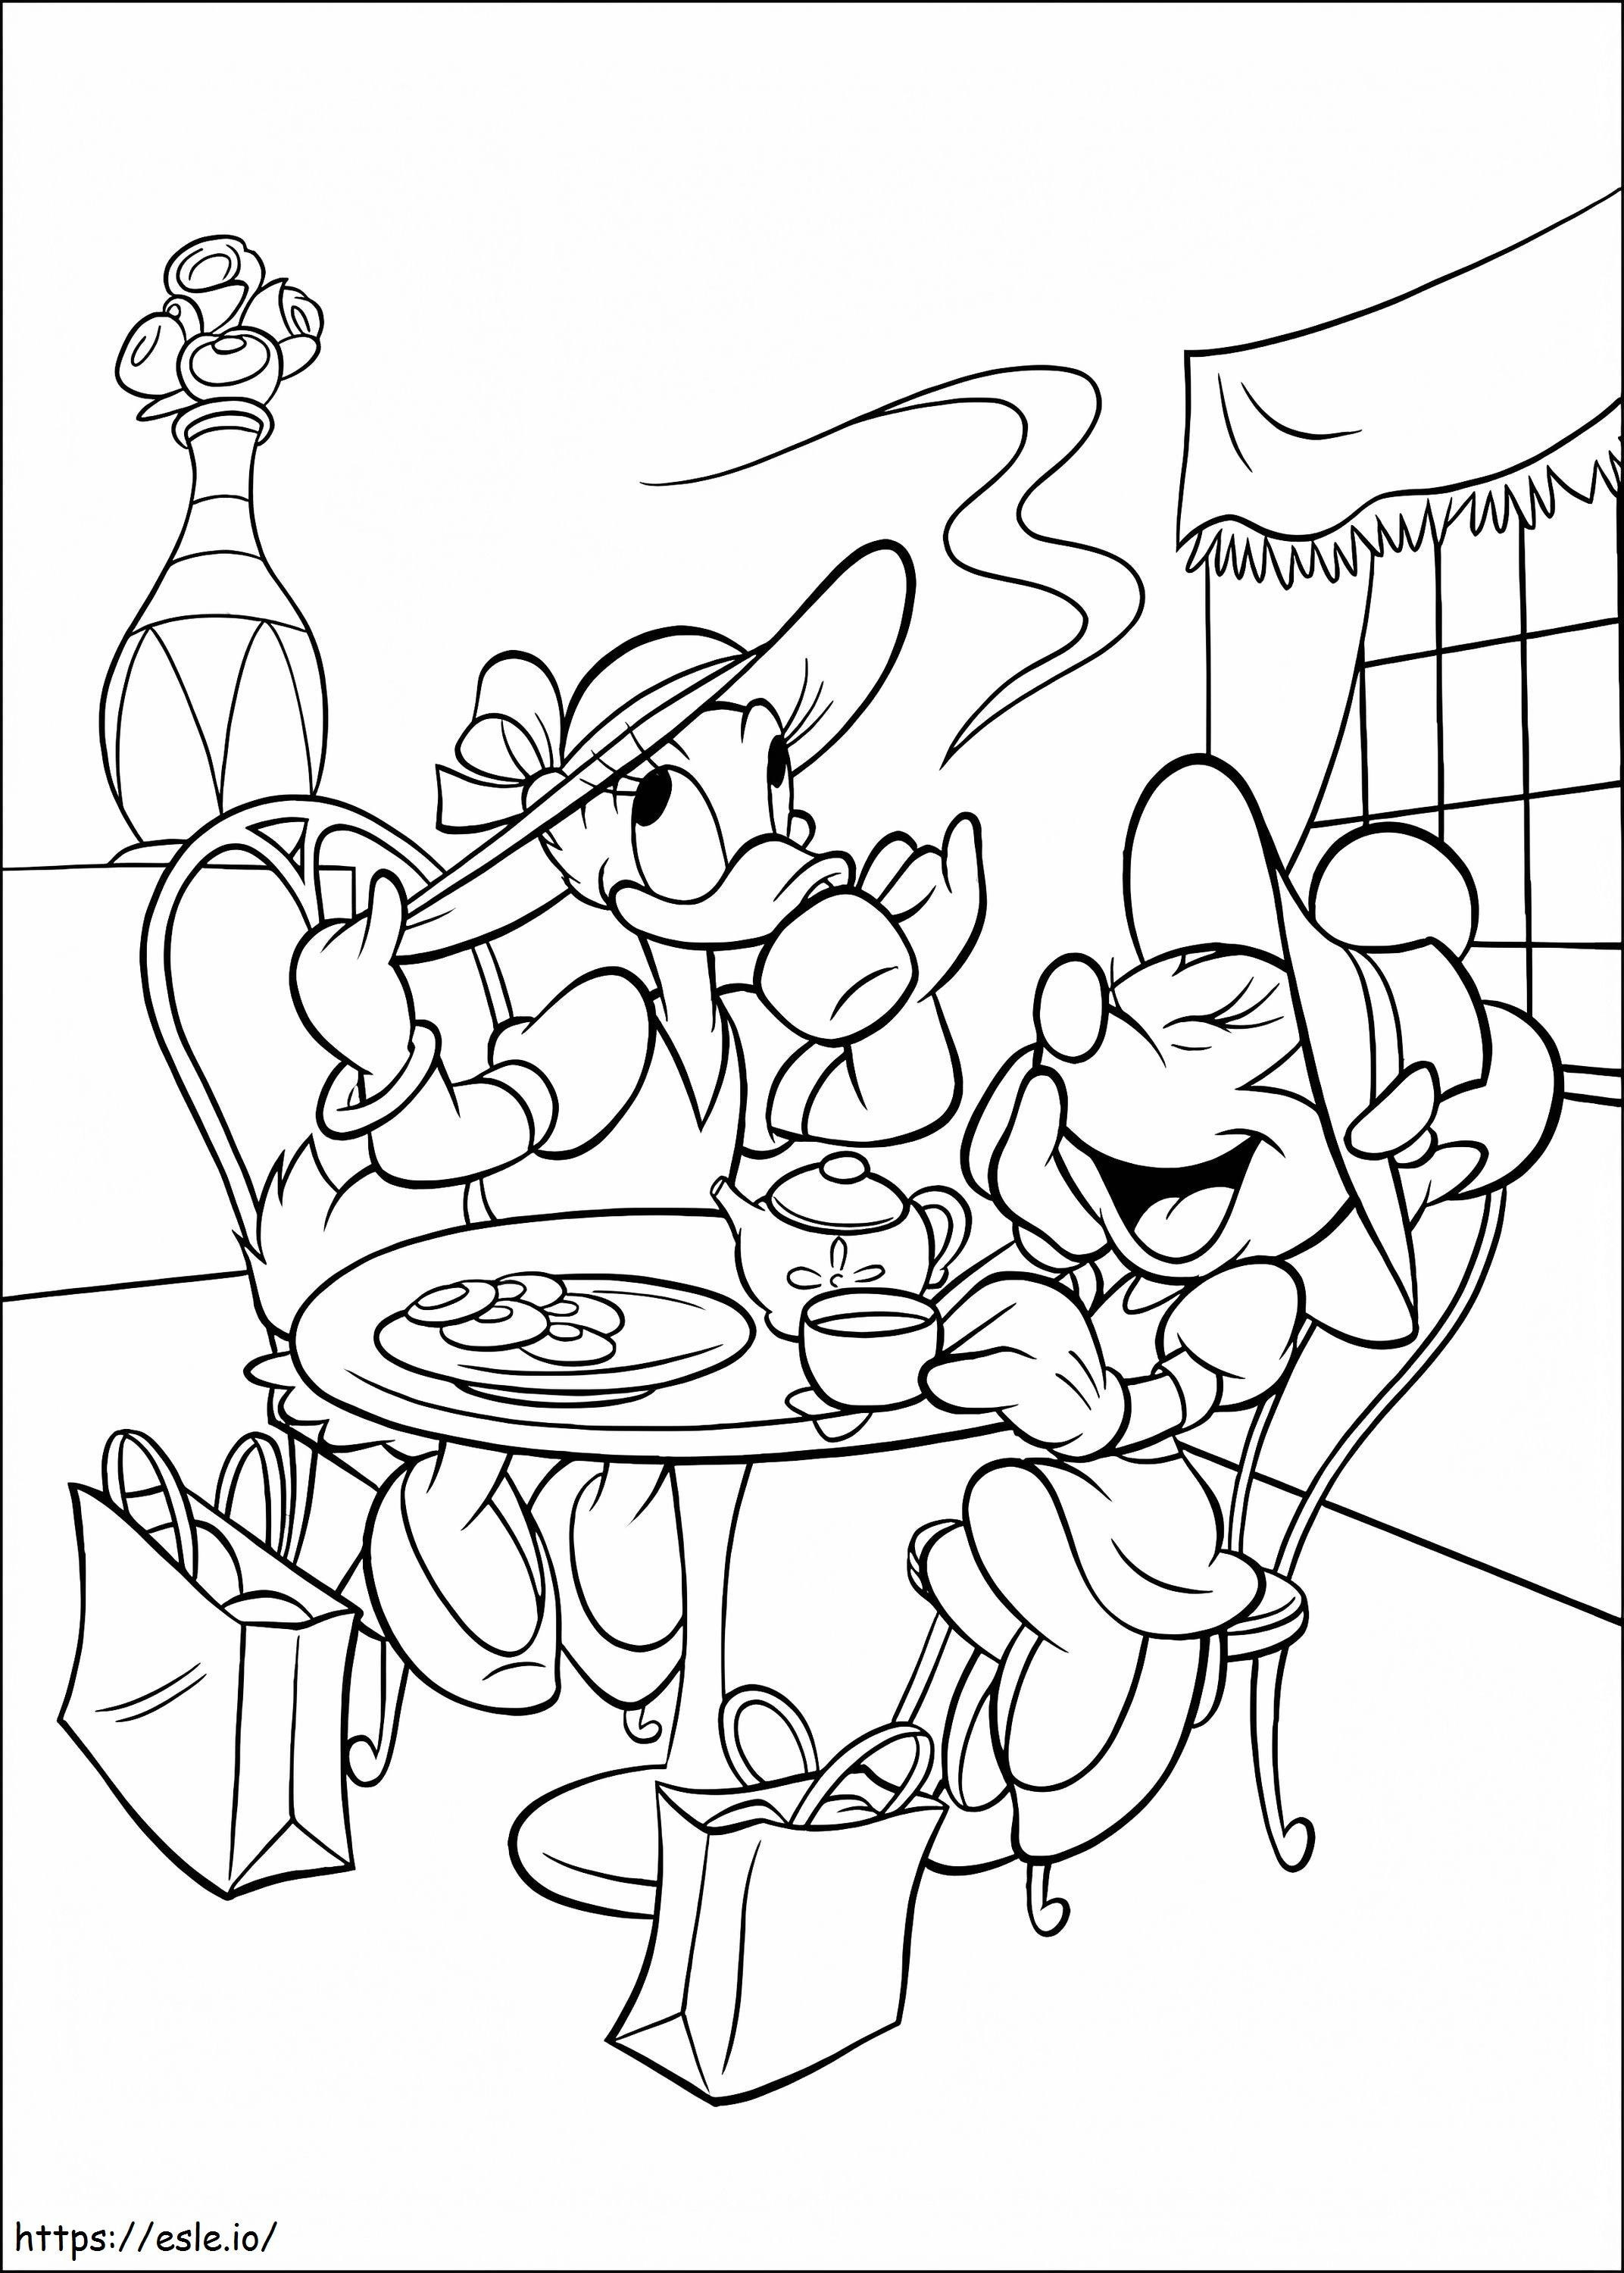 Daisy Duck și Minnie Mouse În Fiesta de colorat